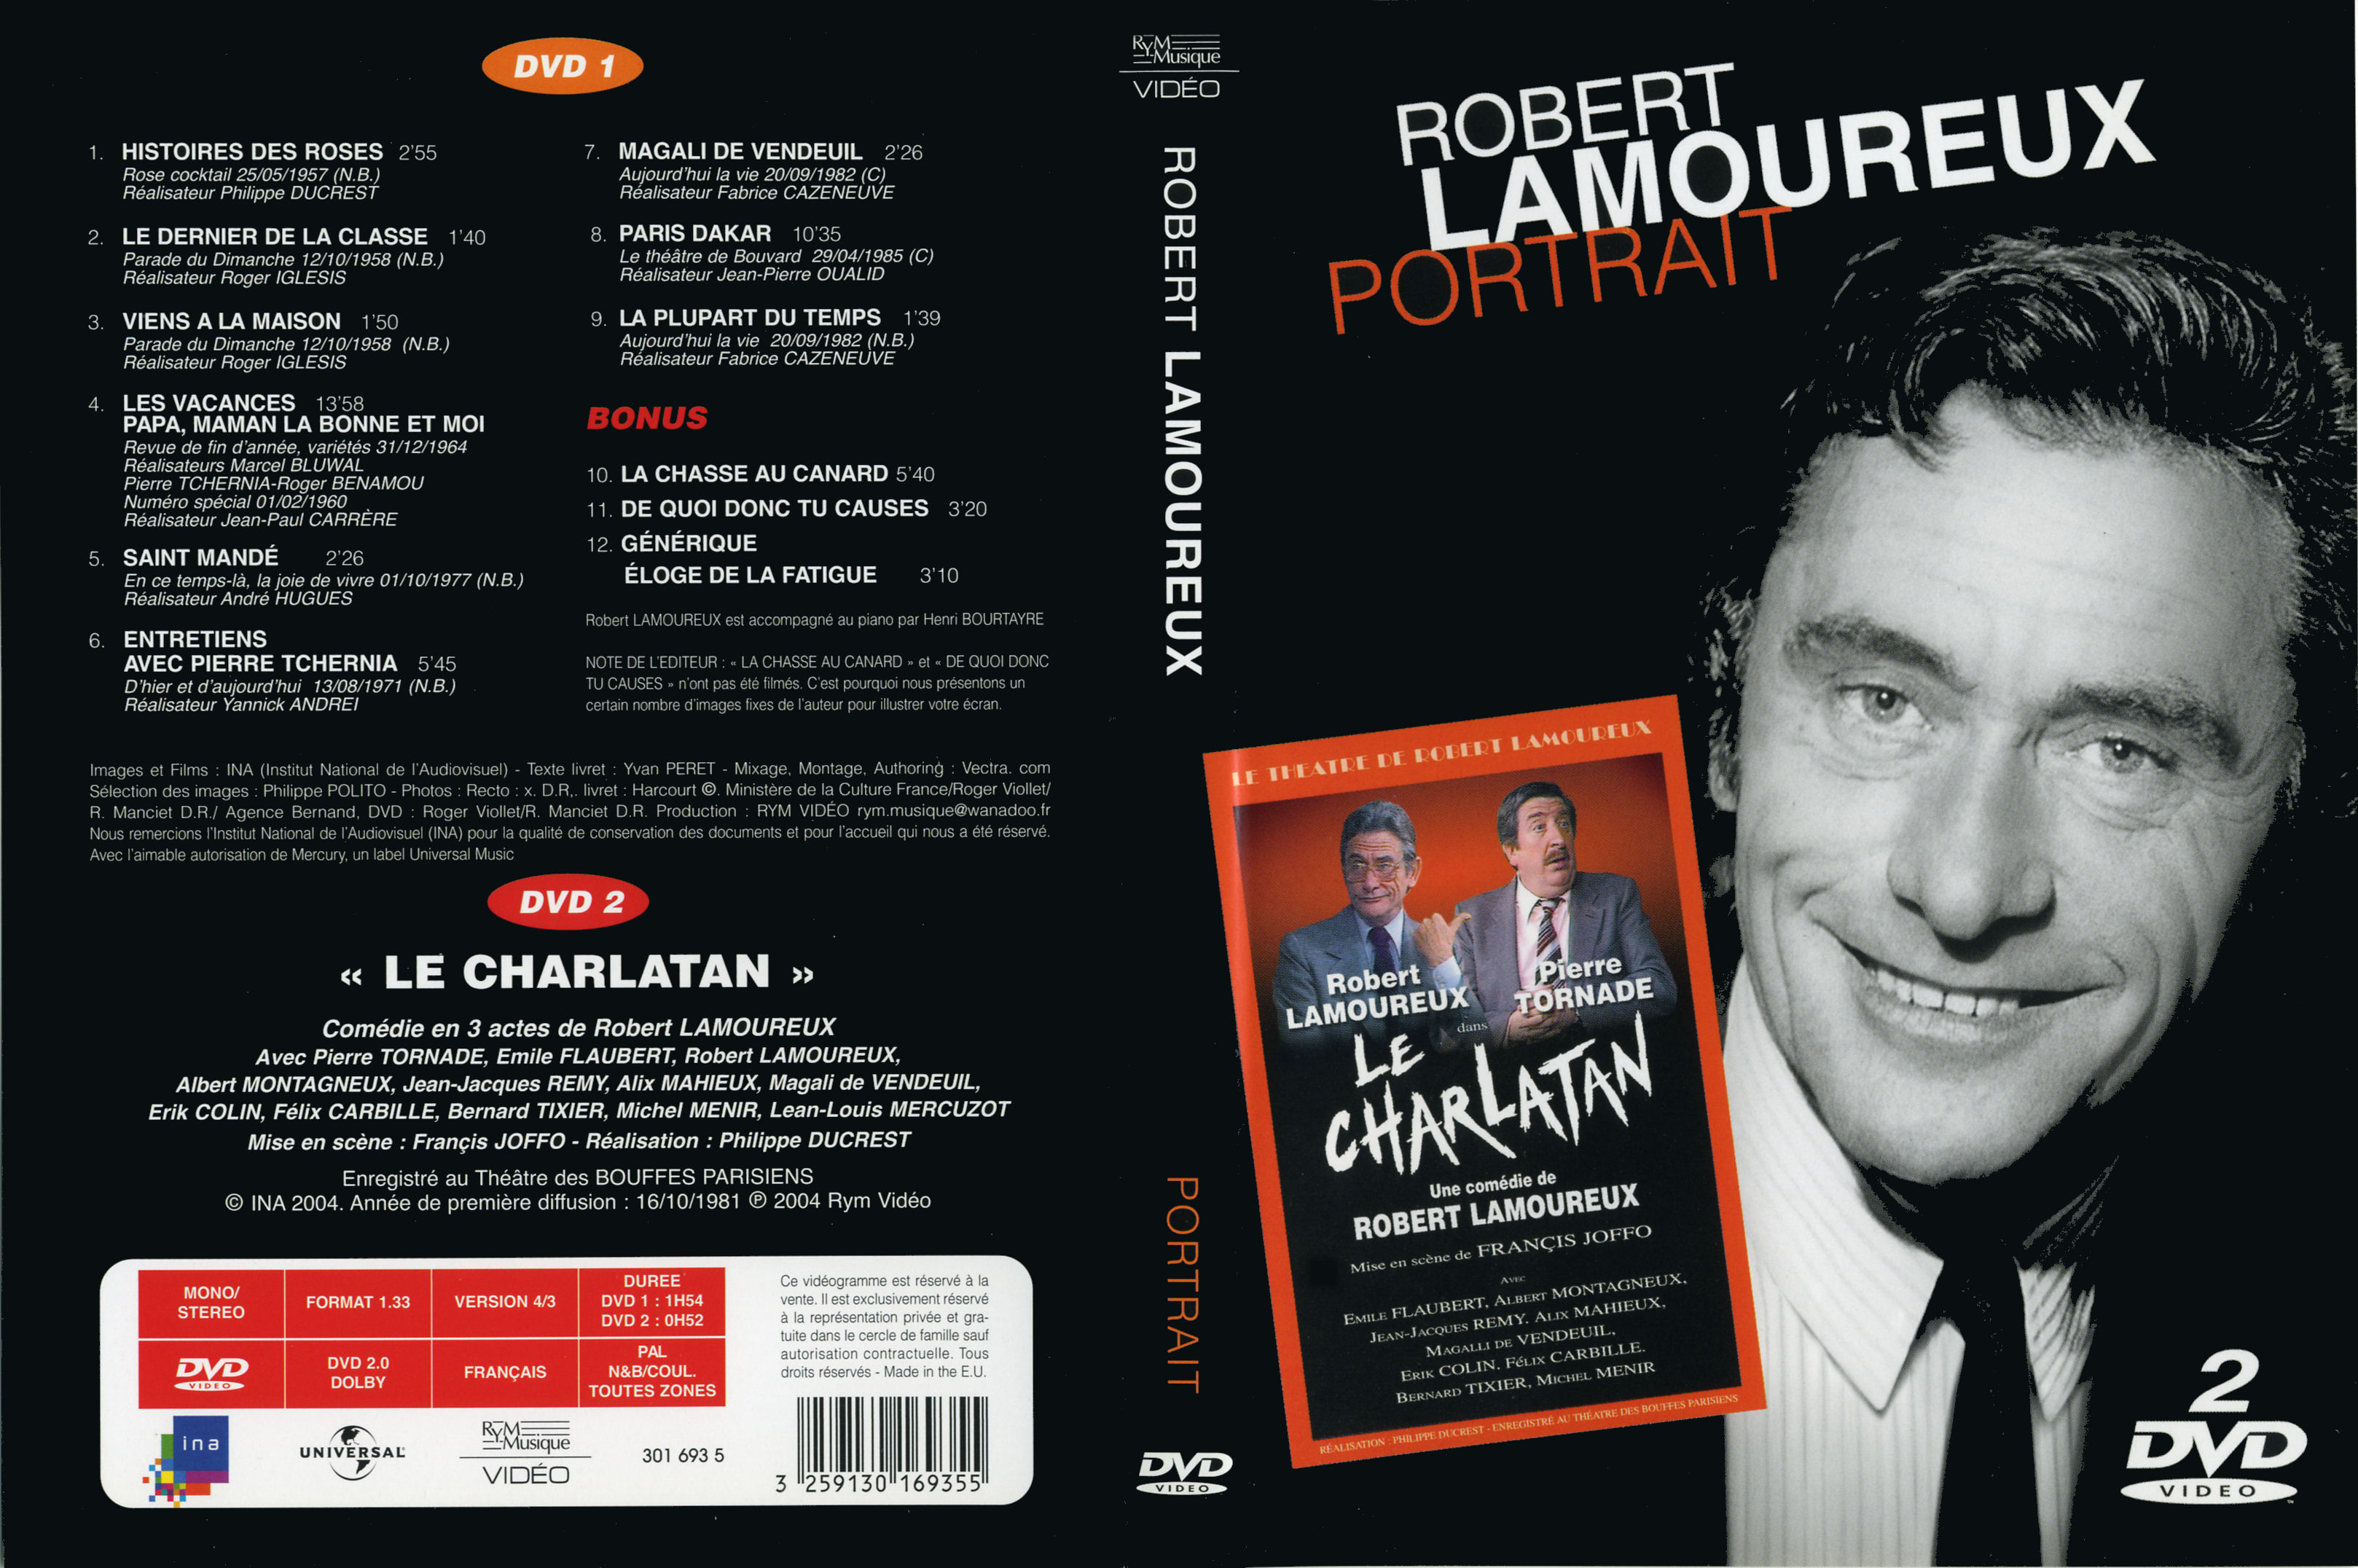 Jaquette DVD Robert Lamoureux Portrait